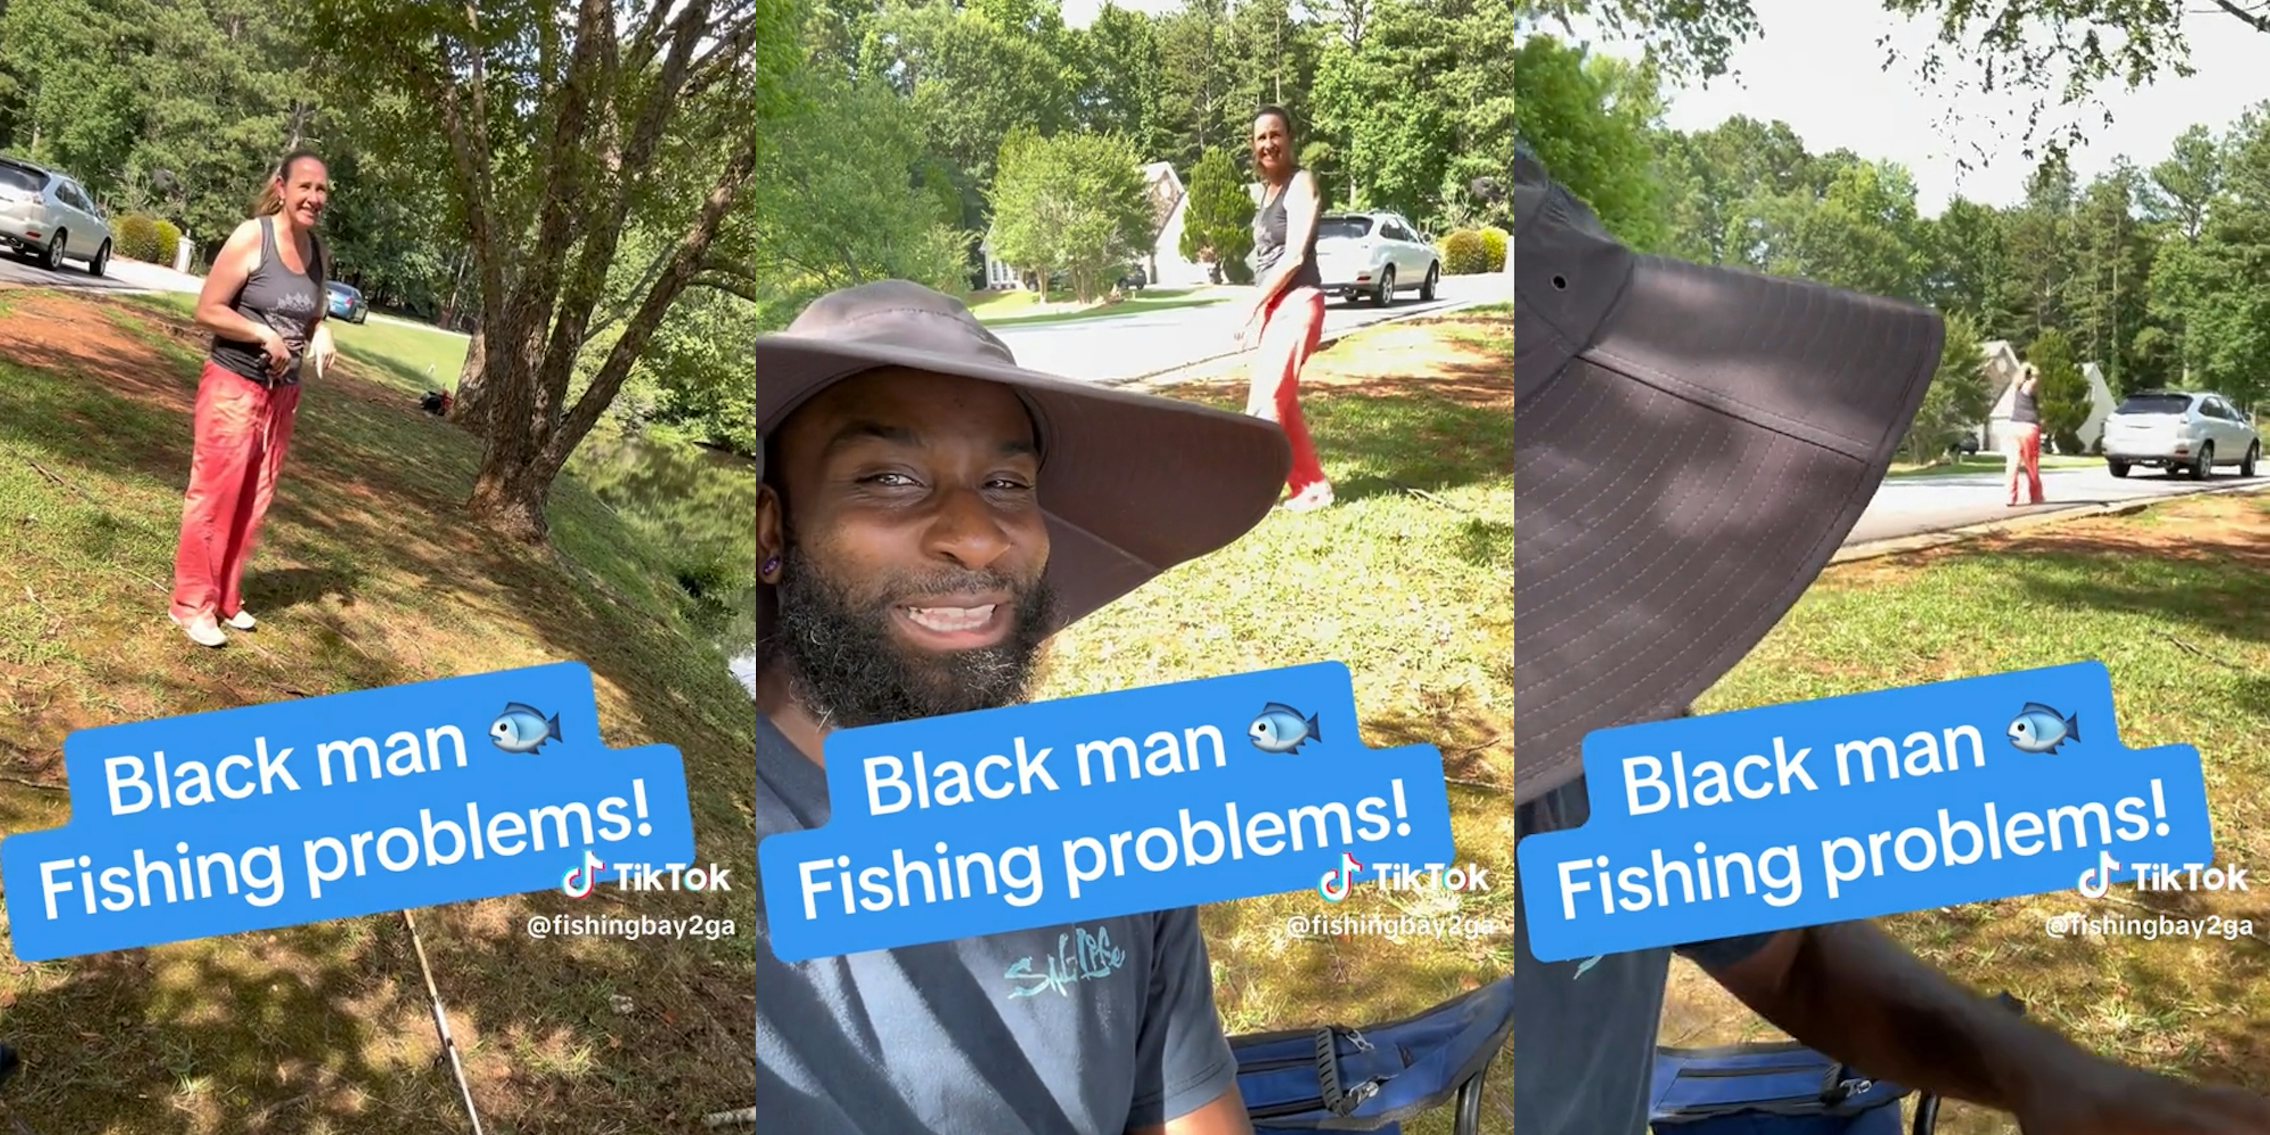 white woman approaching a Black man fishing and then walking away